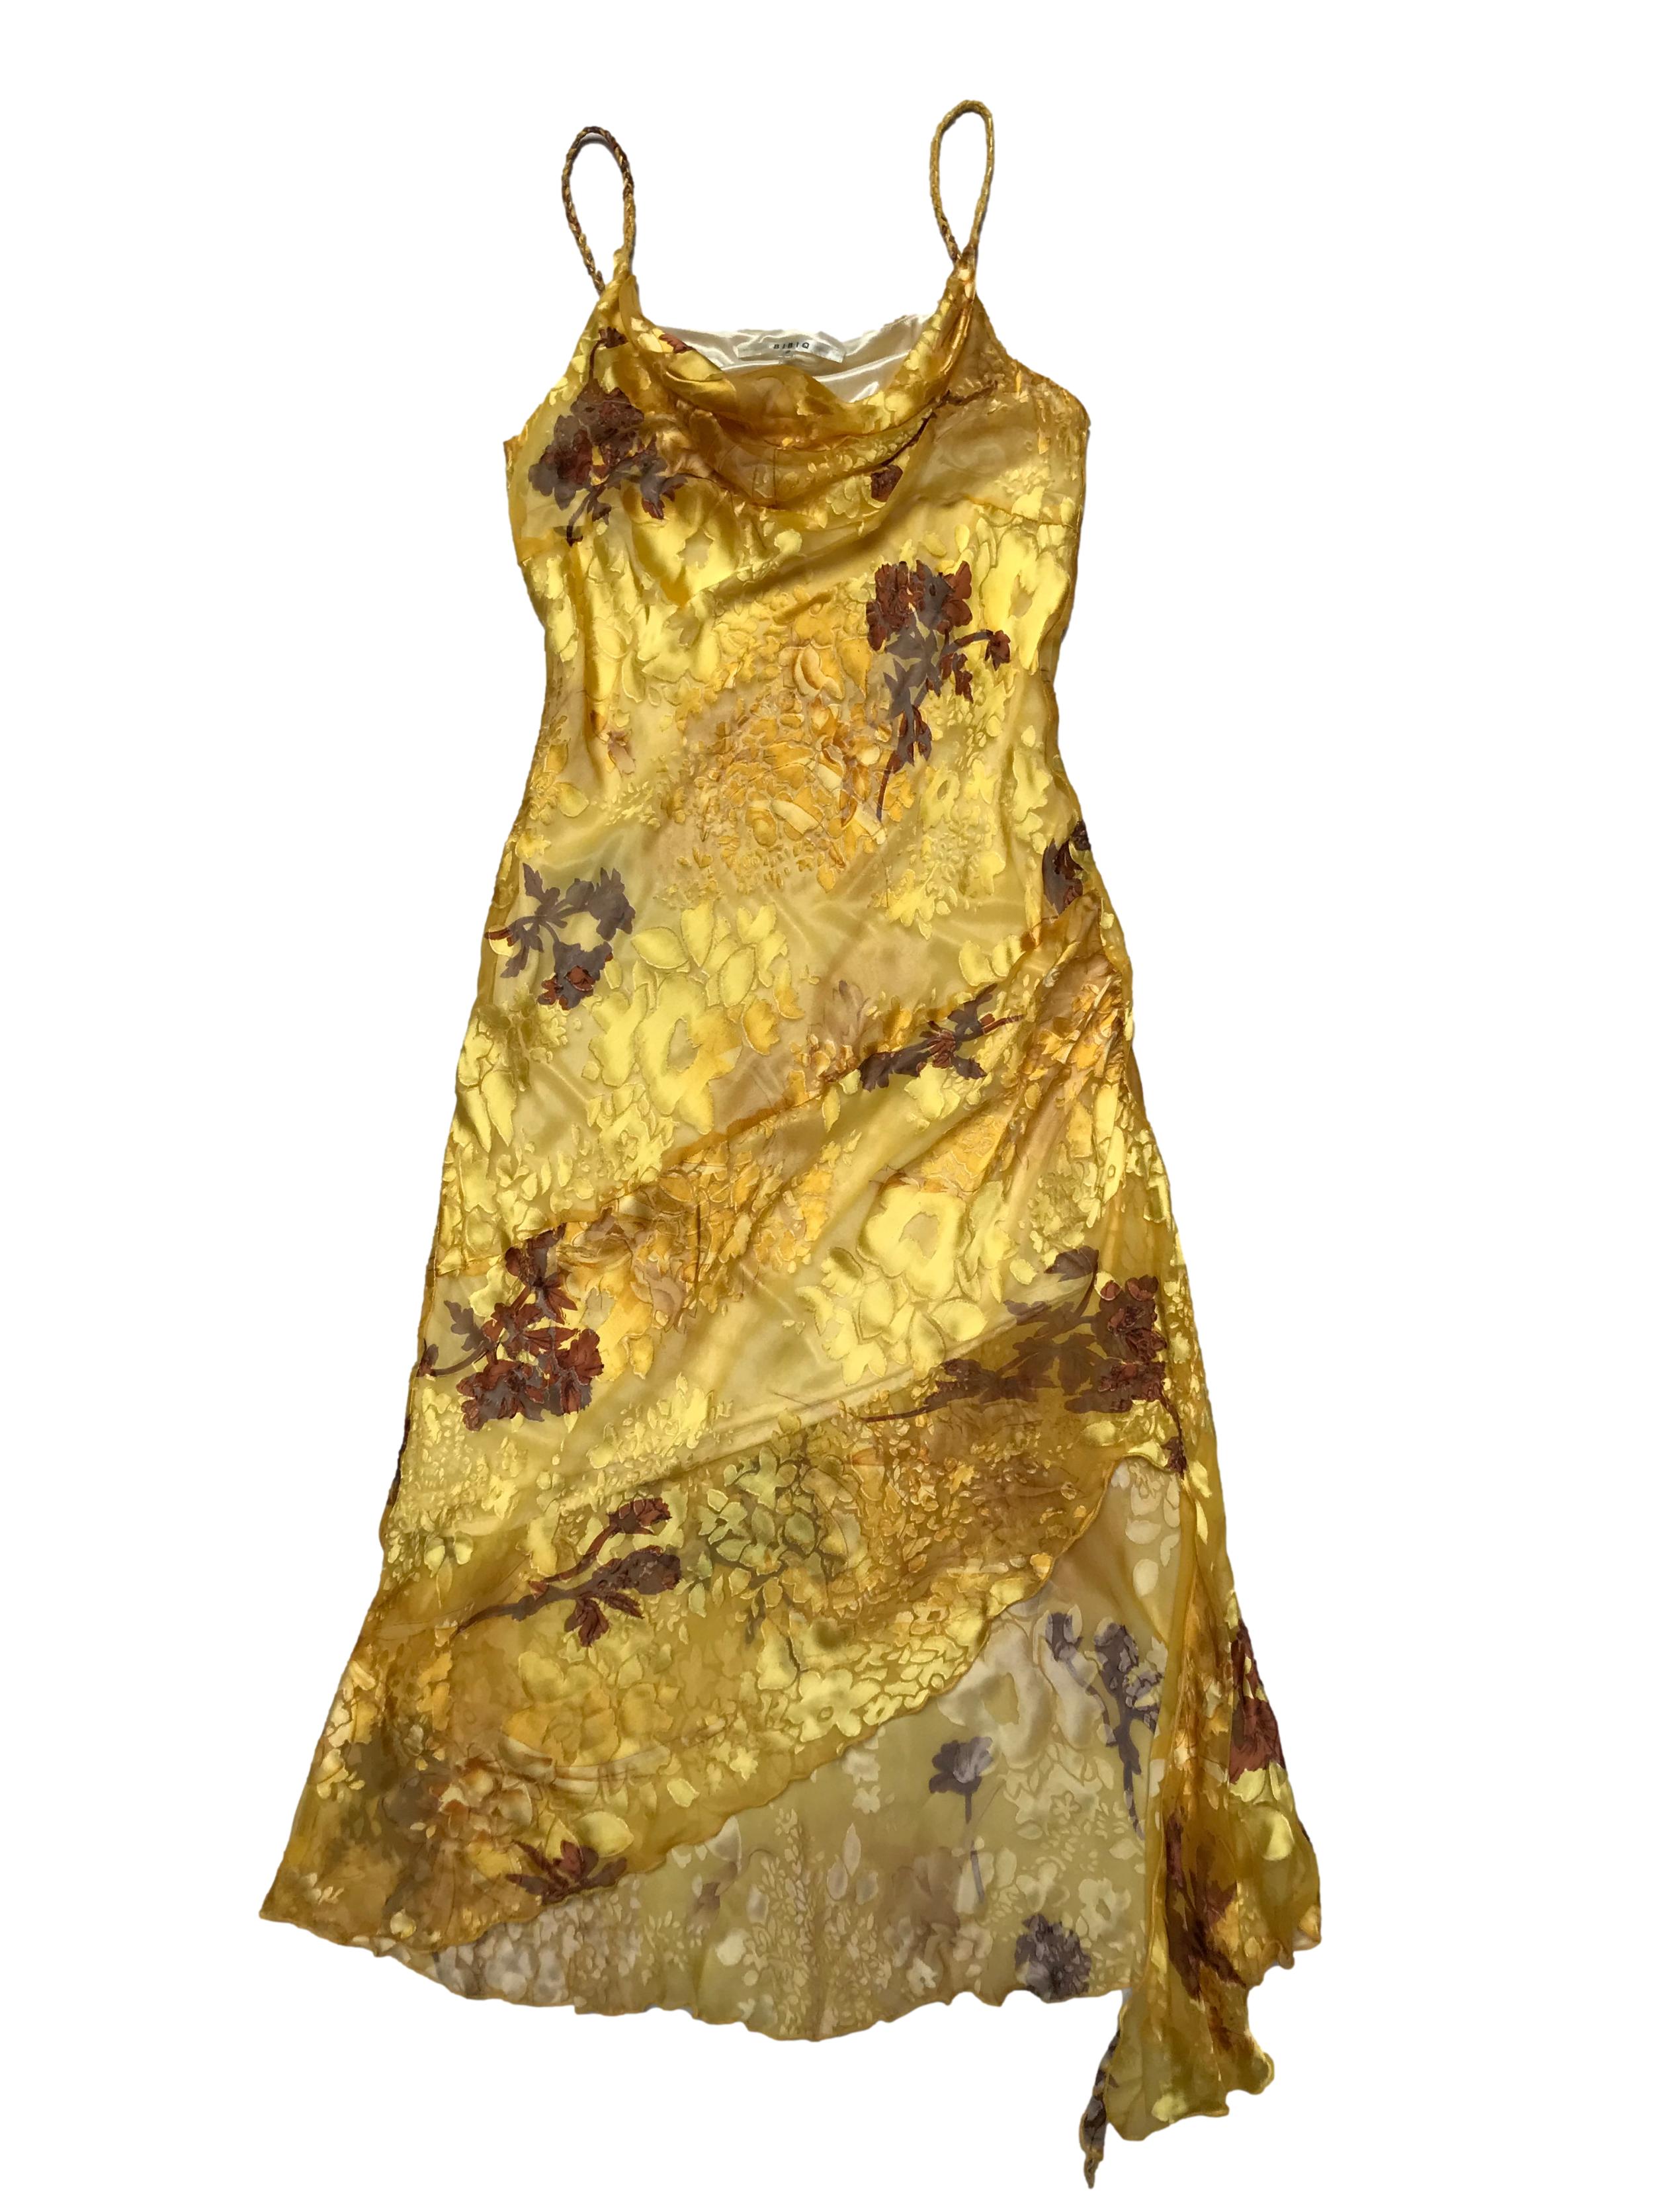 Vestido Bibiq de gasa amarilla con texturas en relieve y estampado floral, basta asimétrica. Largo desde sisa 65 - 95cm